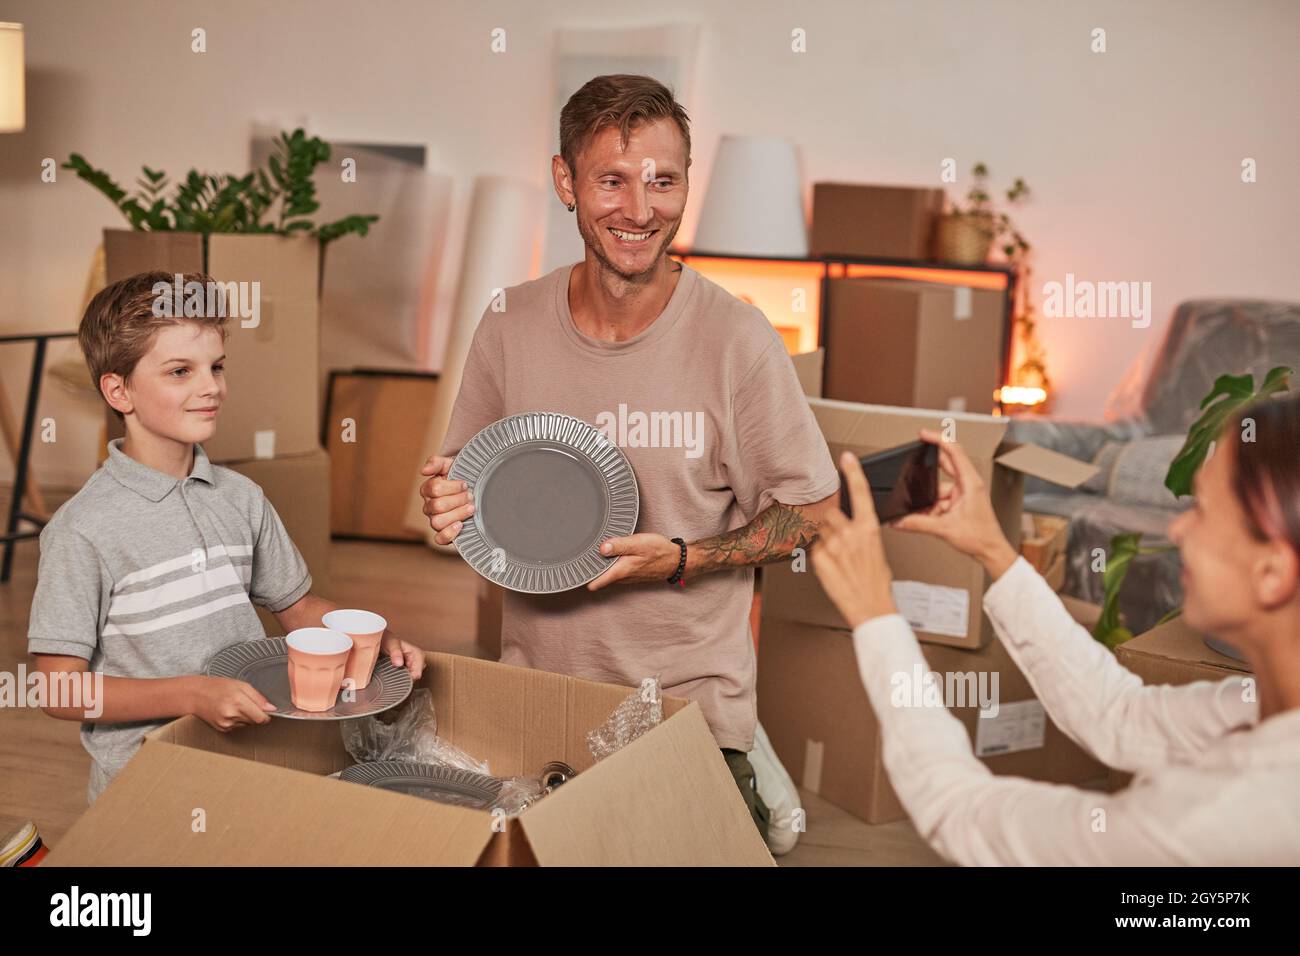 Porträt einer jungen glücklichen Familie, die Boxen auspackt und Fotos macht, während sie in ein neues Zuhause einzieht und Platz kopiert Stockfoto